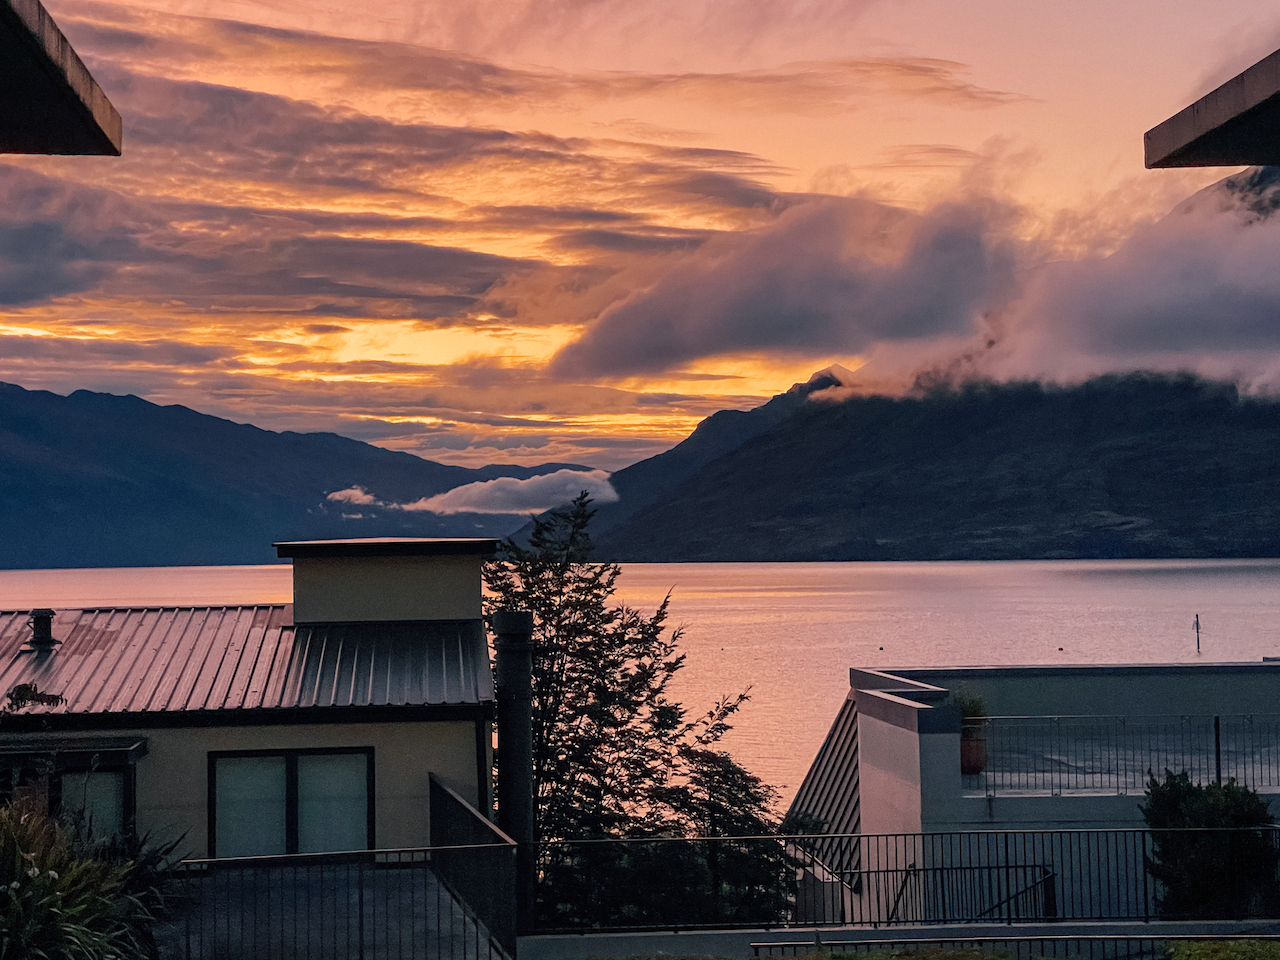 Le coucher de soleil vu depuis notre Airbnb - Queenstown - Nouvelle-Zélande